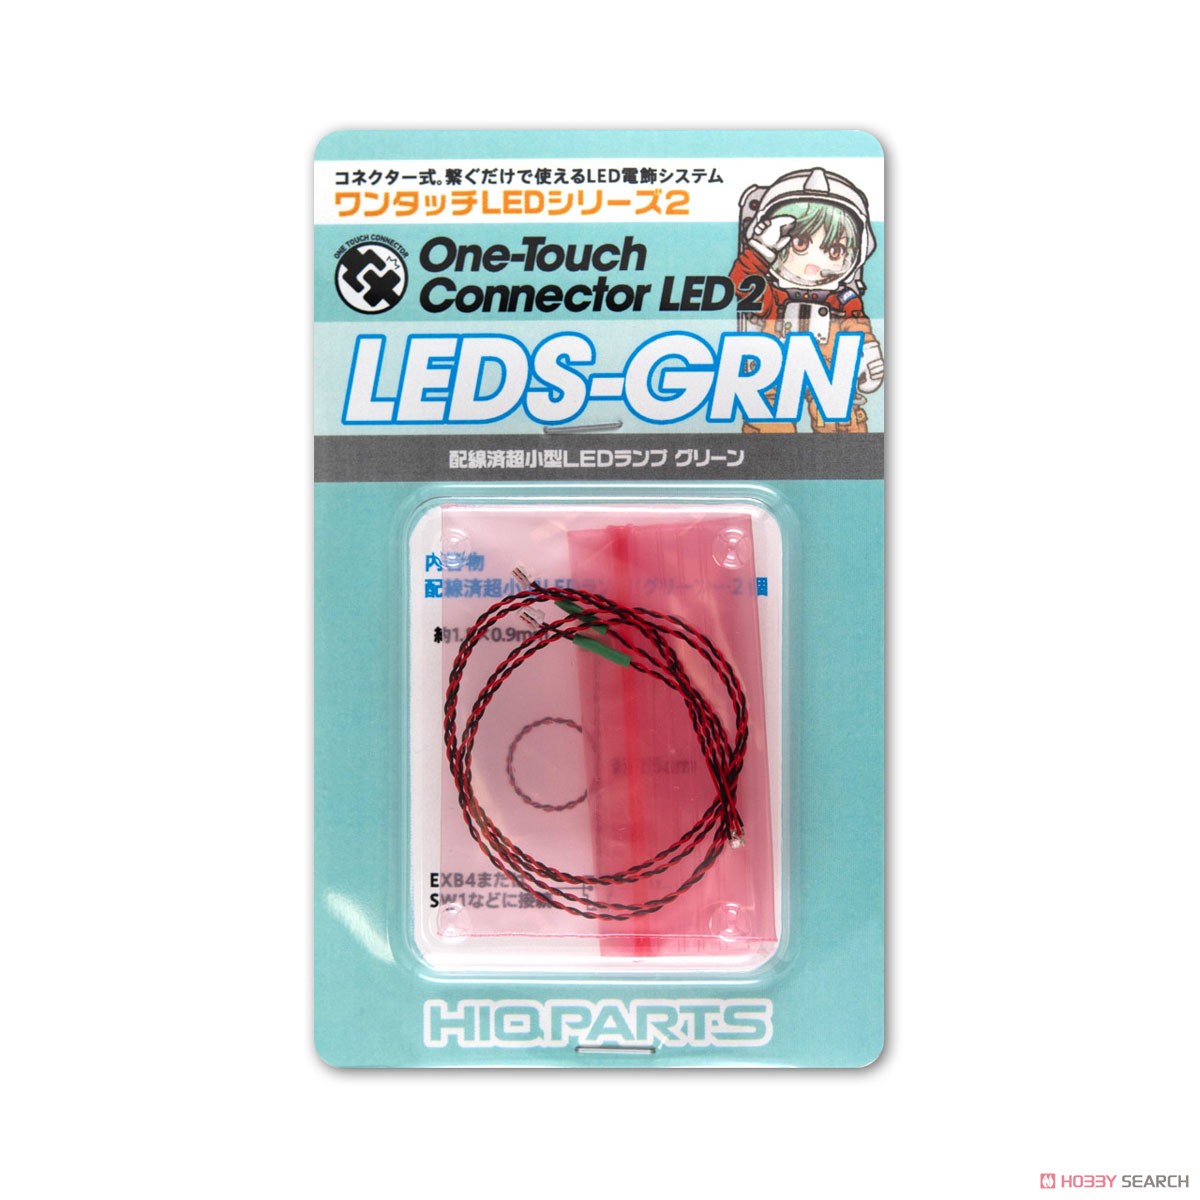 ワンタッチLEDシリーズ2 配線済超小型LEDランプ グリーン (2個入) (電飾) パッケージ1